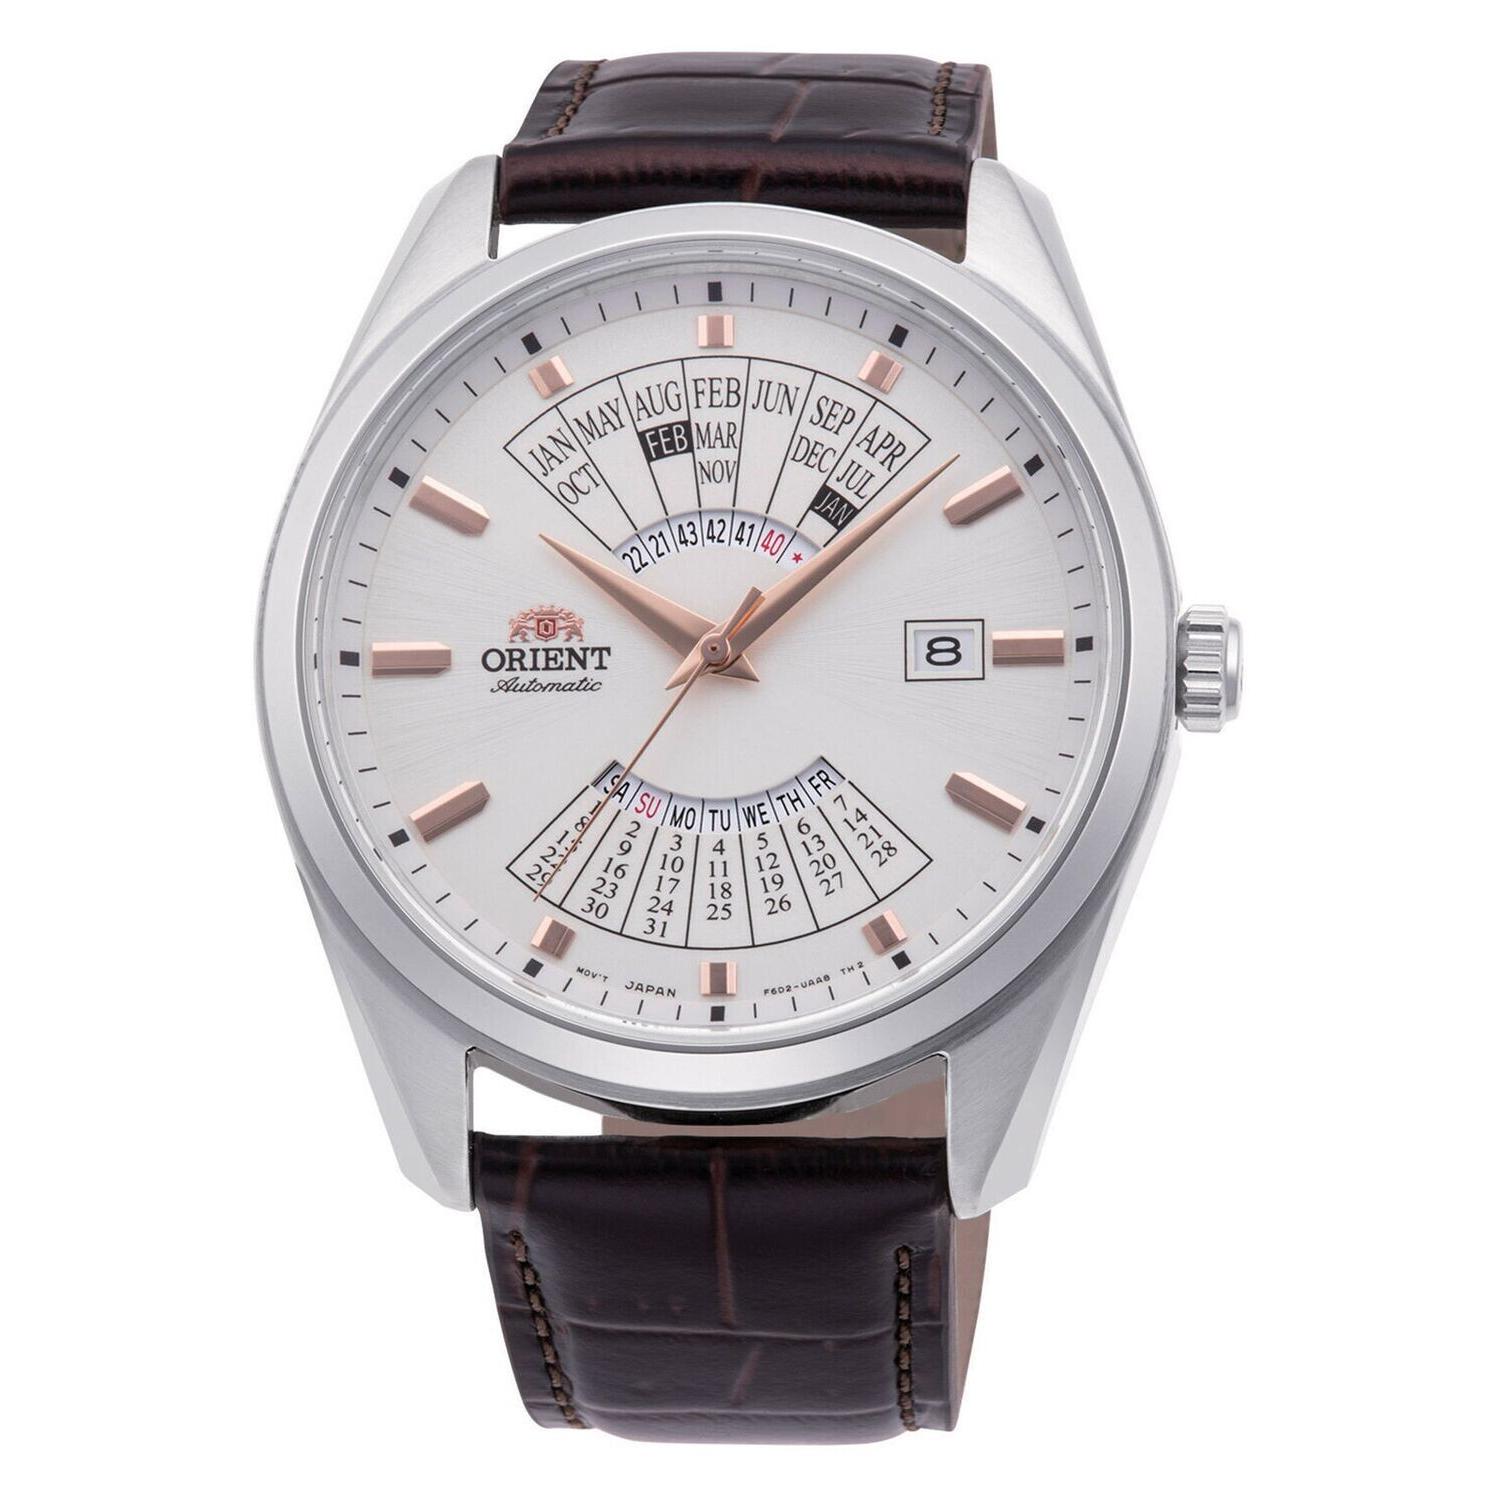 Orient - Reloj automático hombre Orient Multi Year Calendar RA-BA0005S dial blanco 43.5mm correa de cuero 50m (admite cuerda manual) RA-BA0005S10B